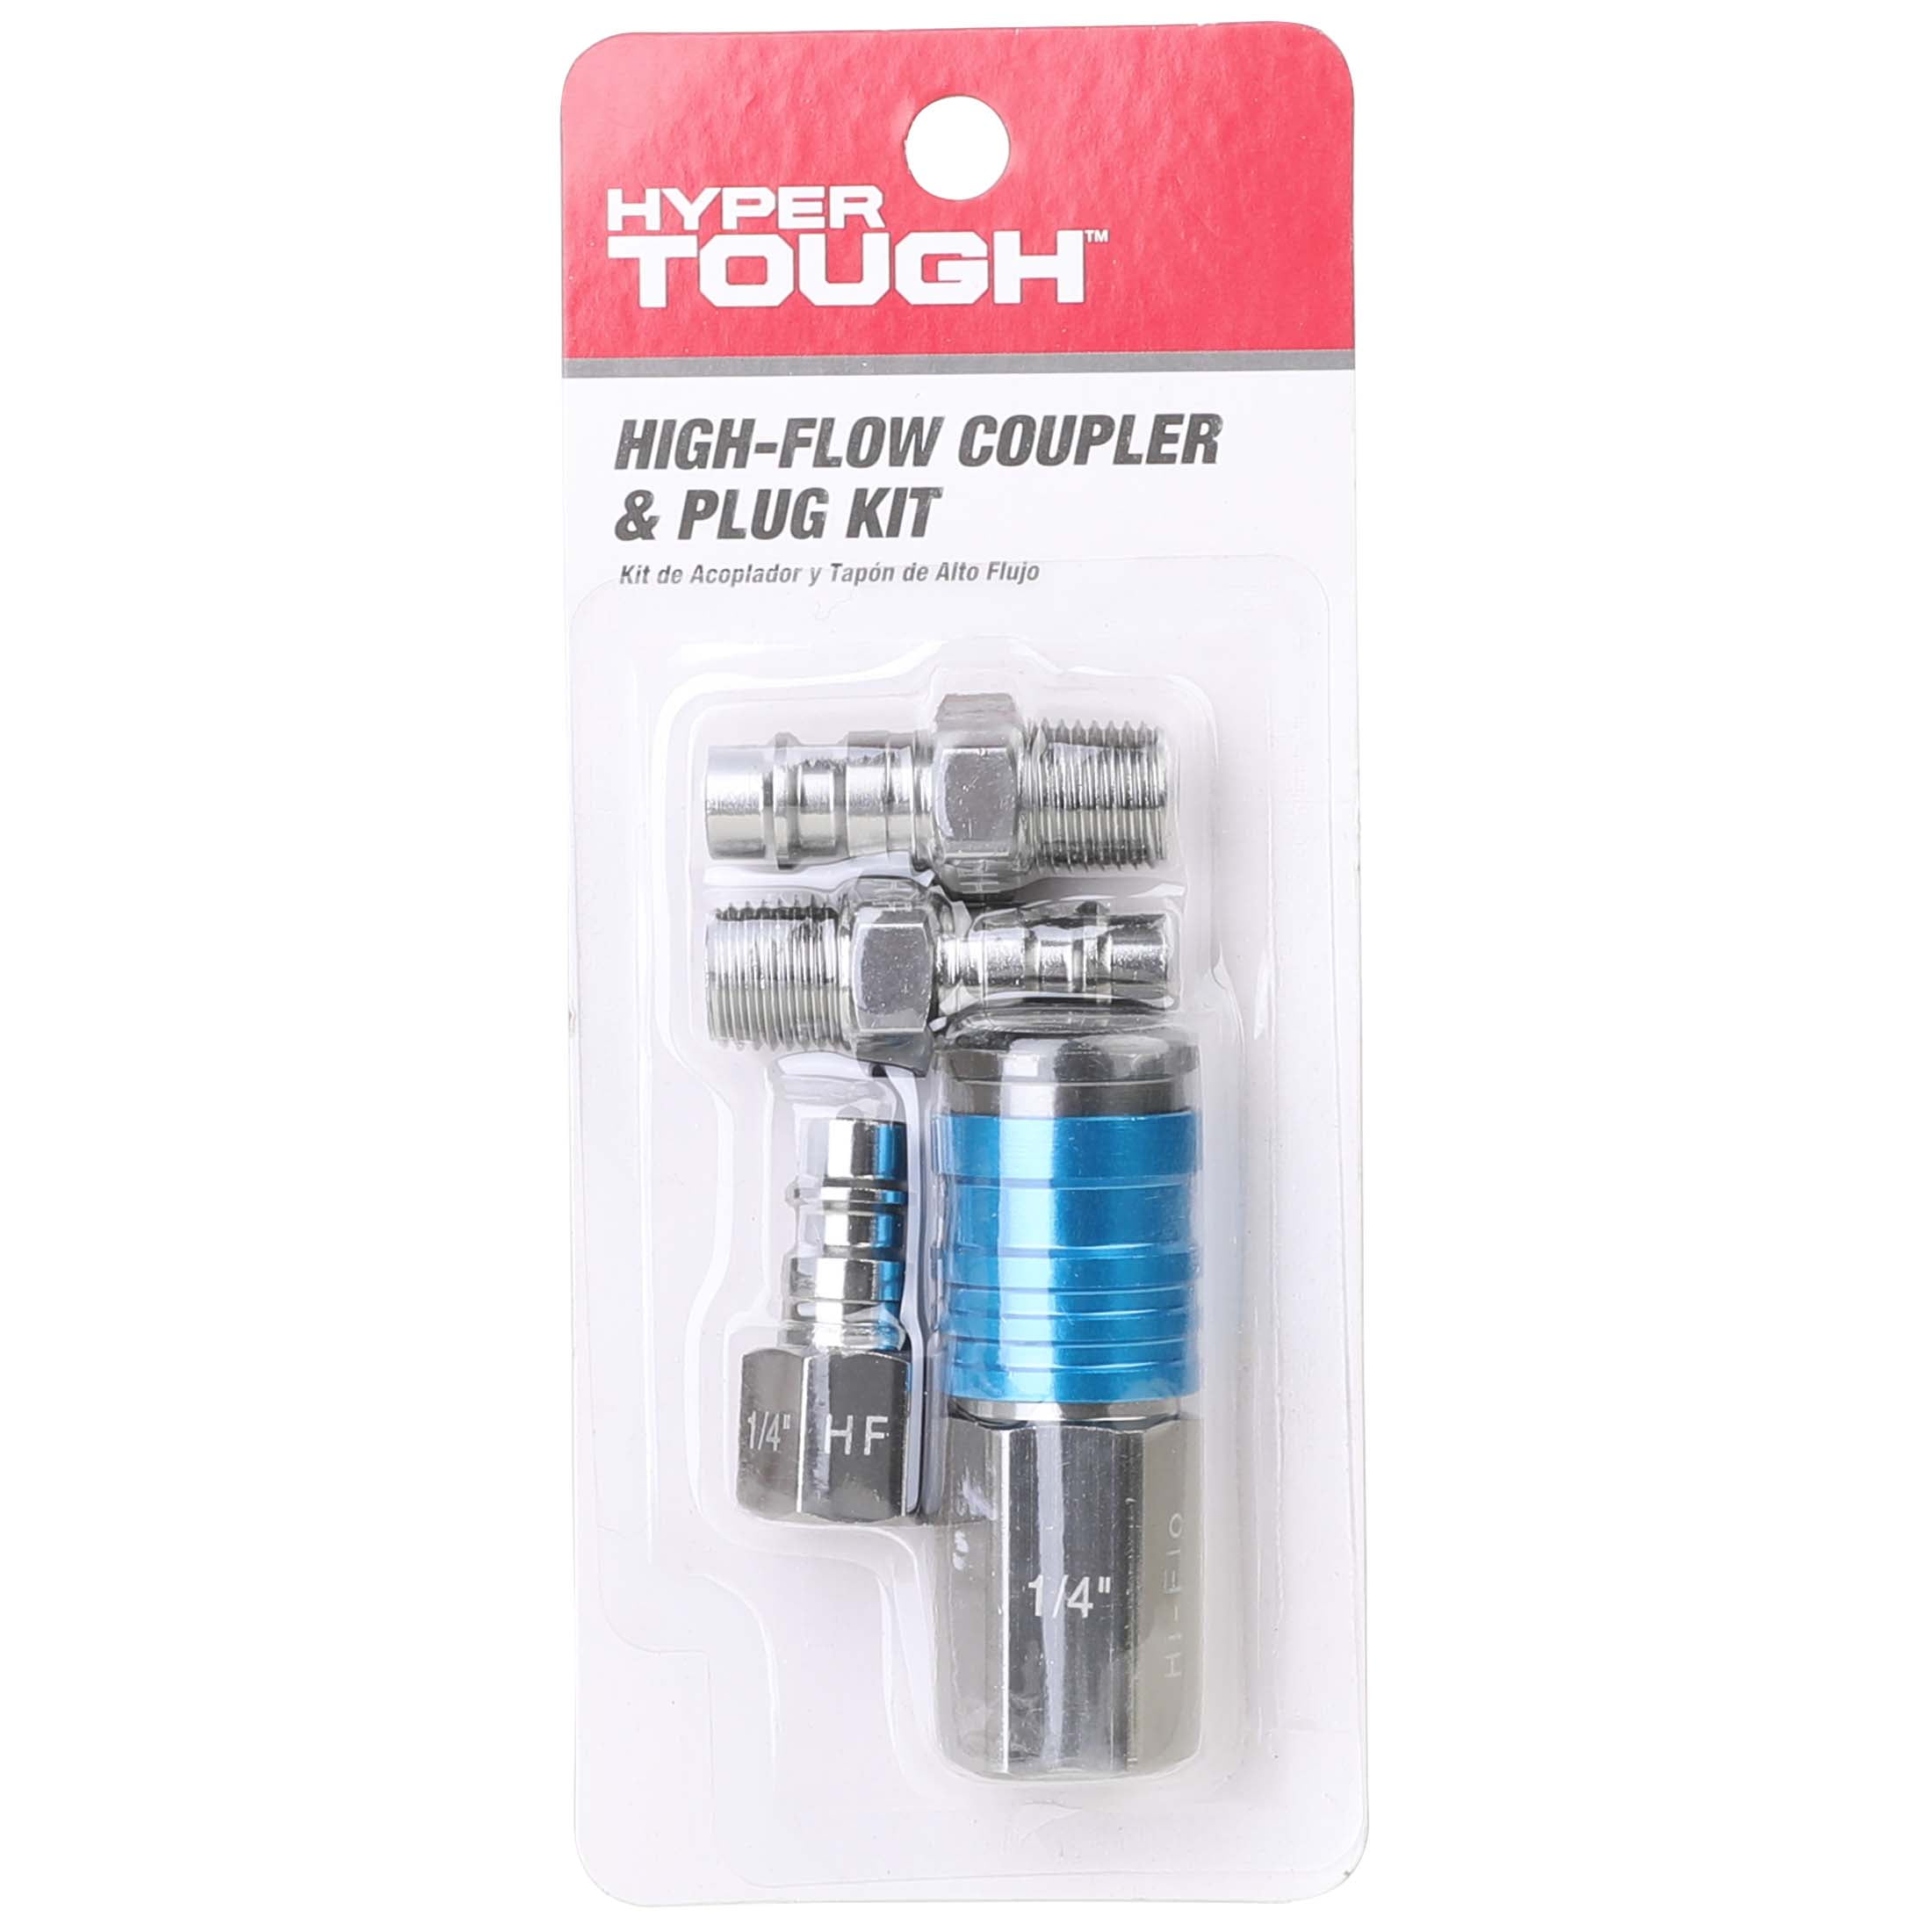 Hyper Tough 70 CFM HI Flo Aluminum Coupler & Plug Set 4 Pieces Model Number 13-903HT